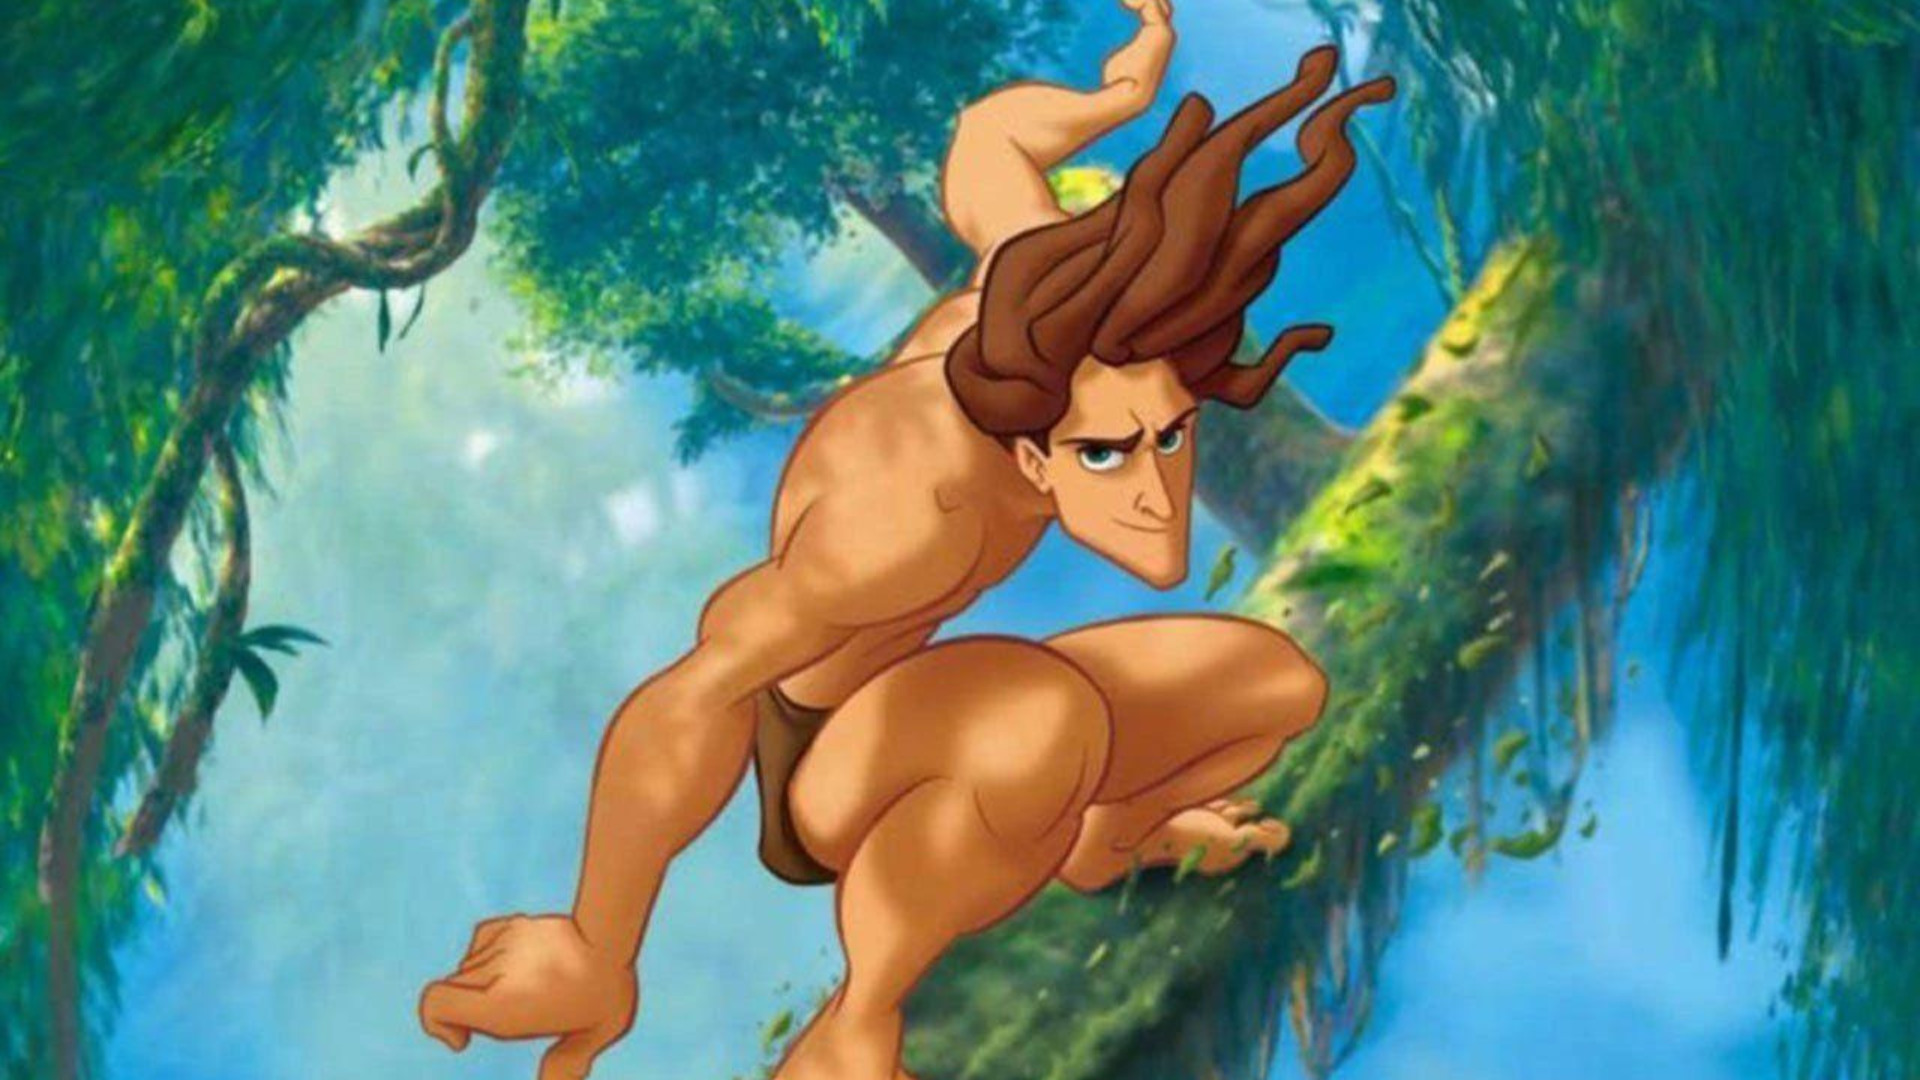 Remake em live-action de Tarzan está sendo desenvolvido pela Disney, diz site